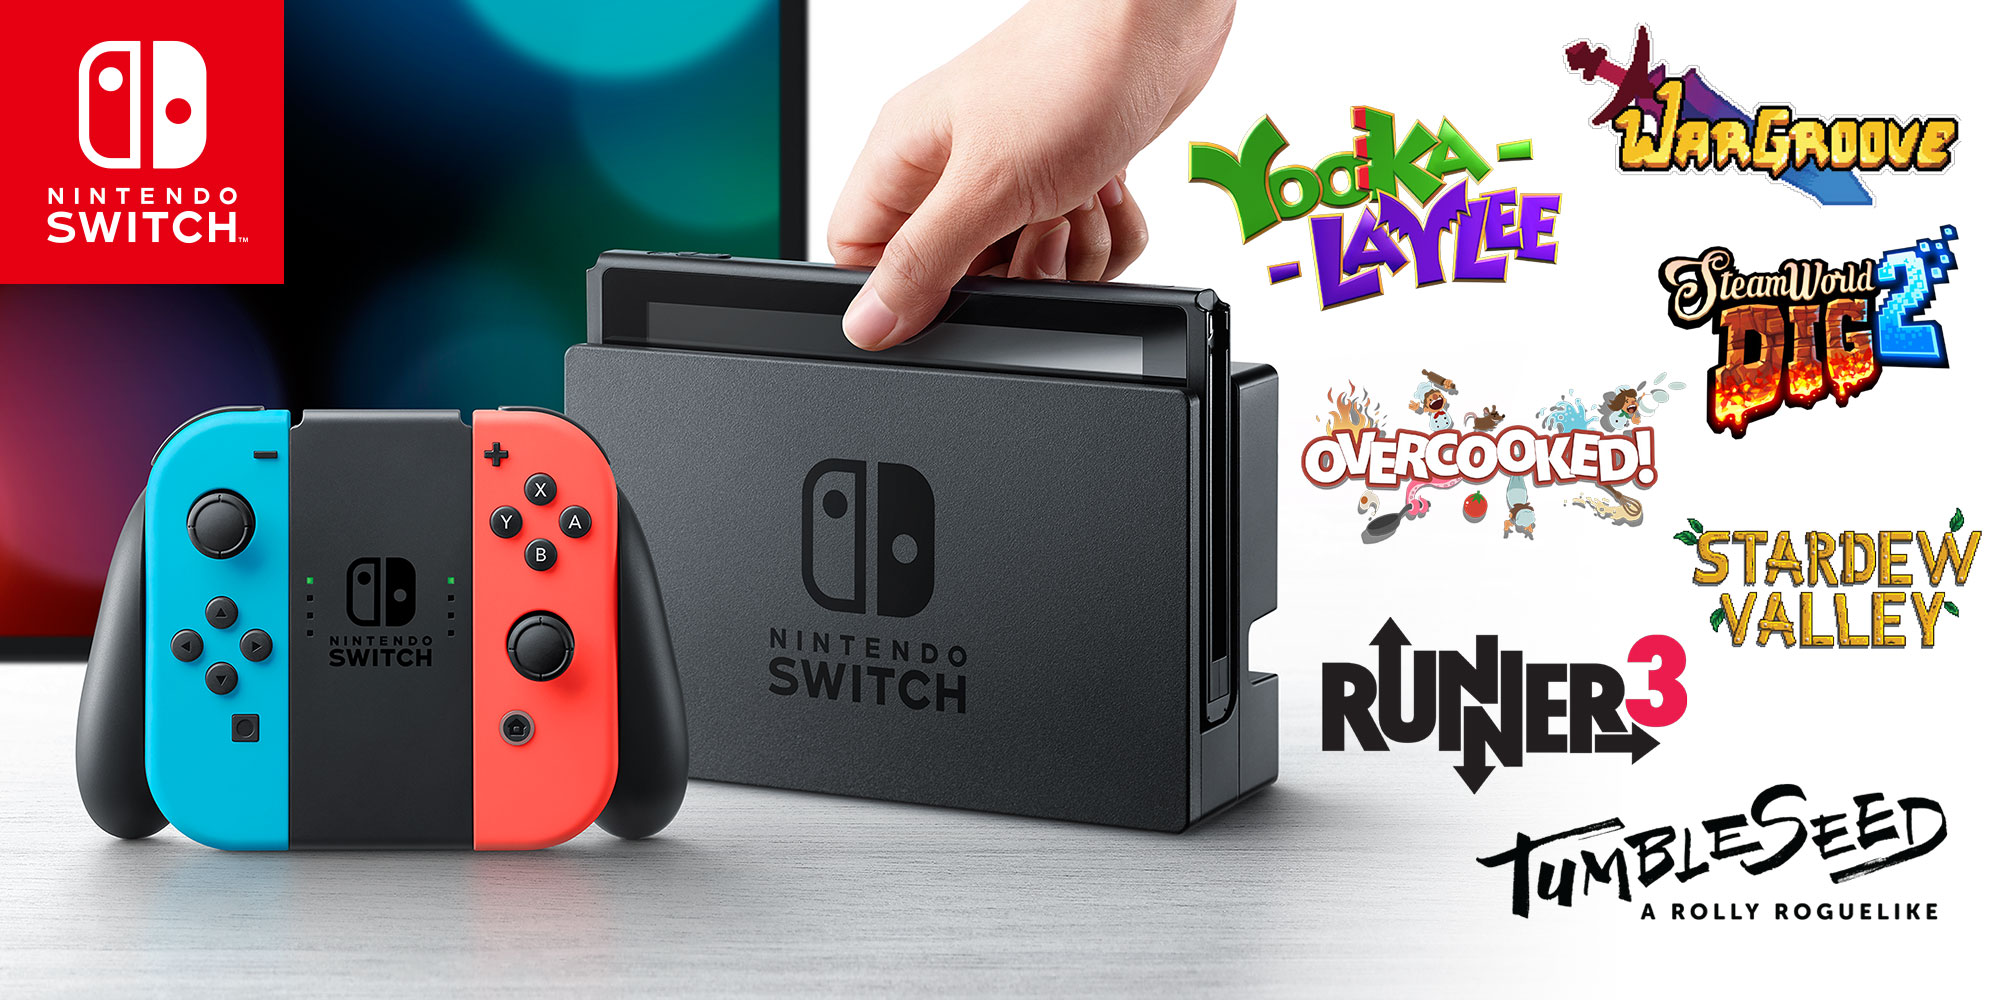 Nintendo onthult nieuwe samenwerkingen en eerste indiegames voor Nintendo eShop op Nintendo Switch